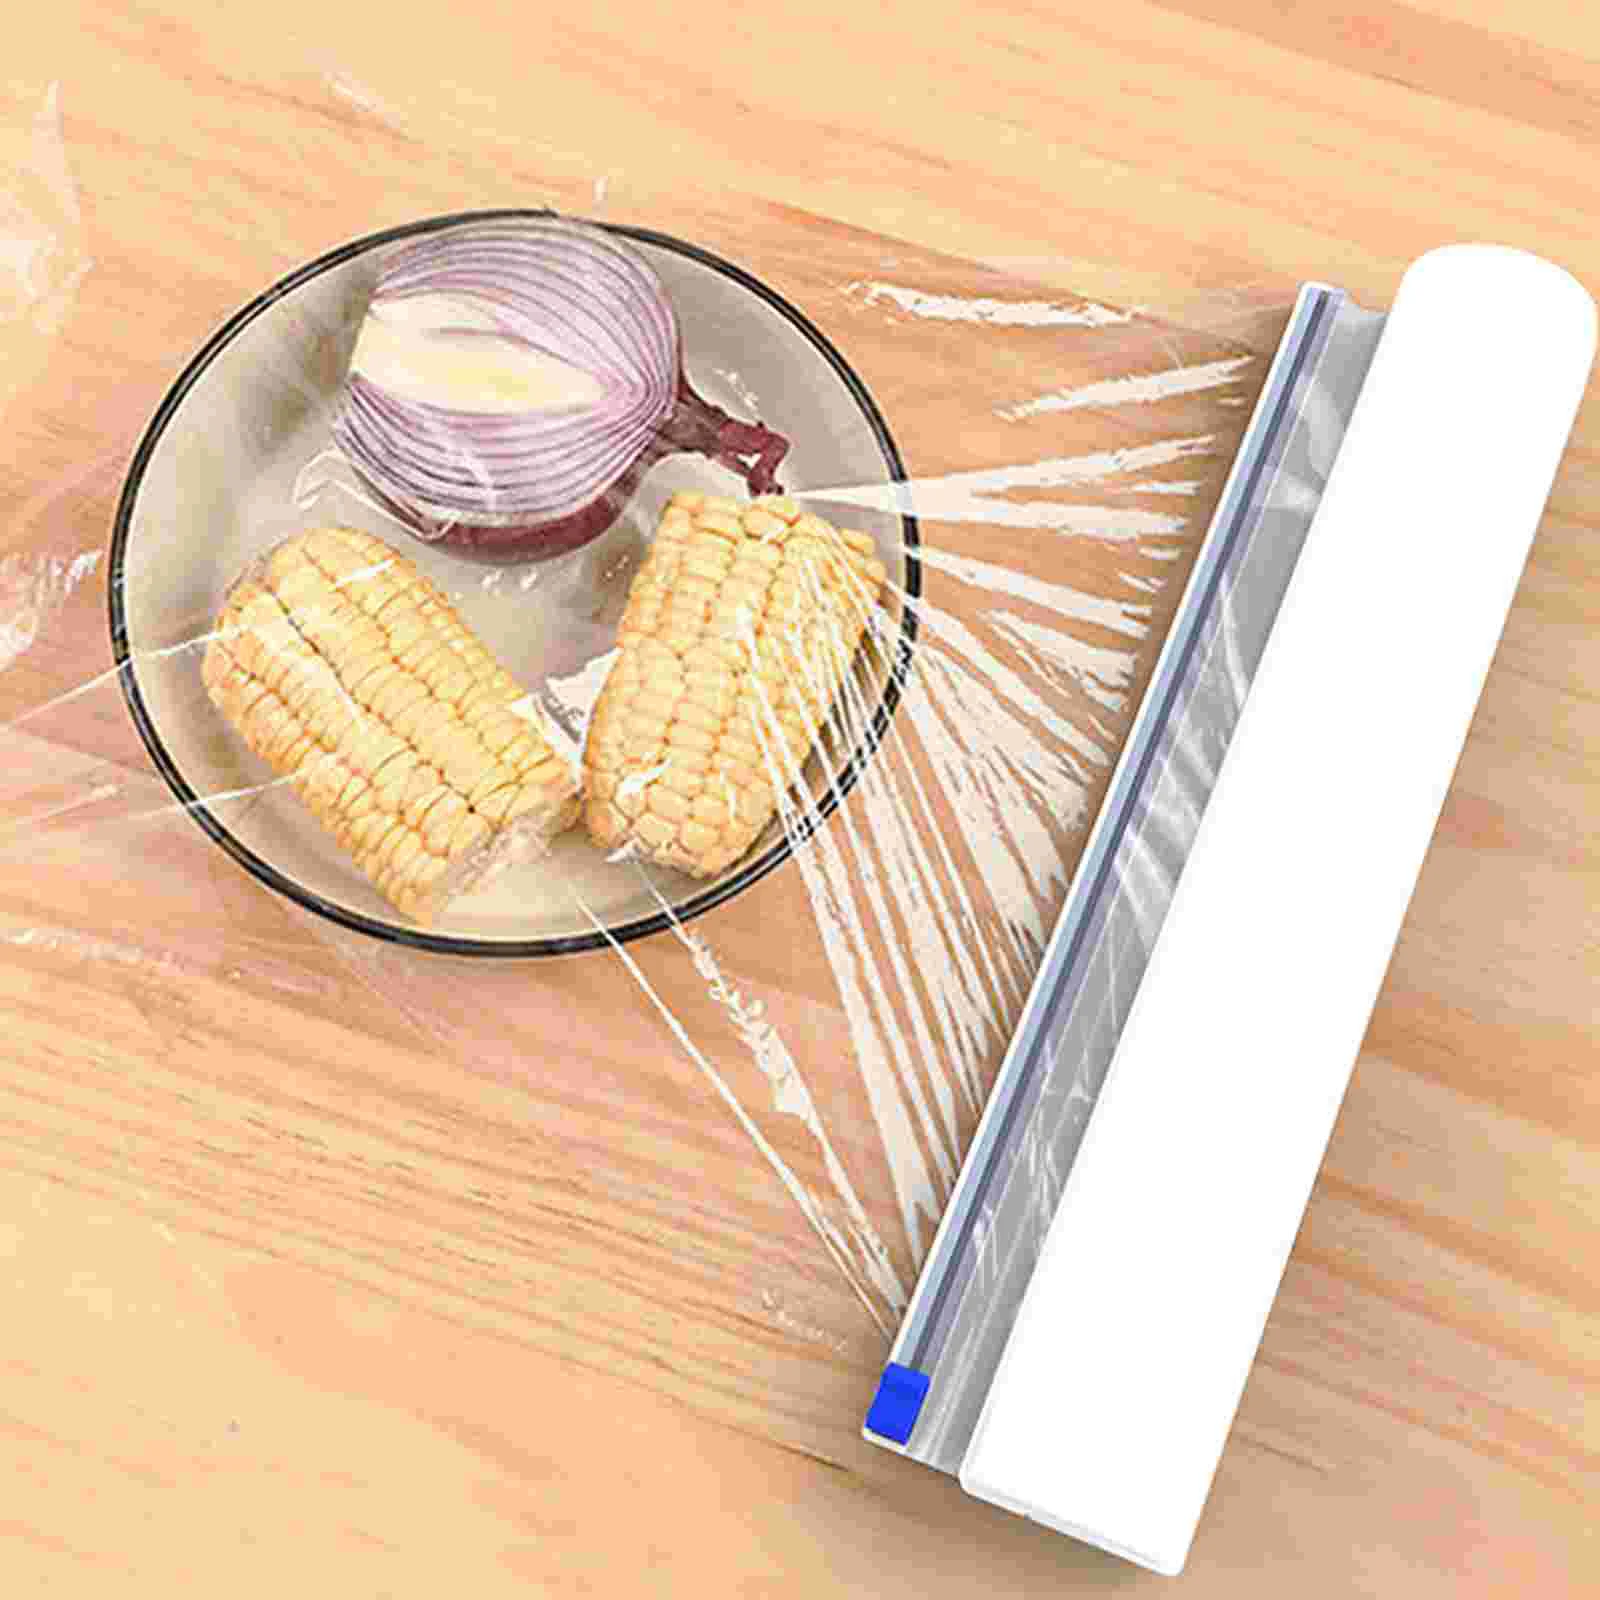 

Plastic Wrap Slider Foil Film Knives Kitchen Gadget Cling Plug-in Sliding Slicer Scoring Dispenser Food